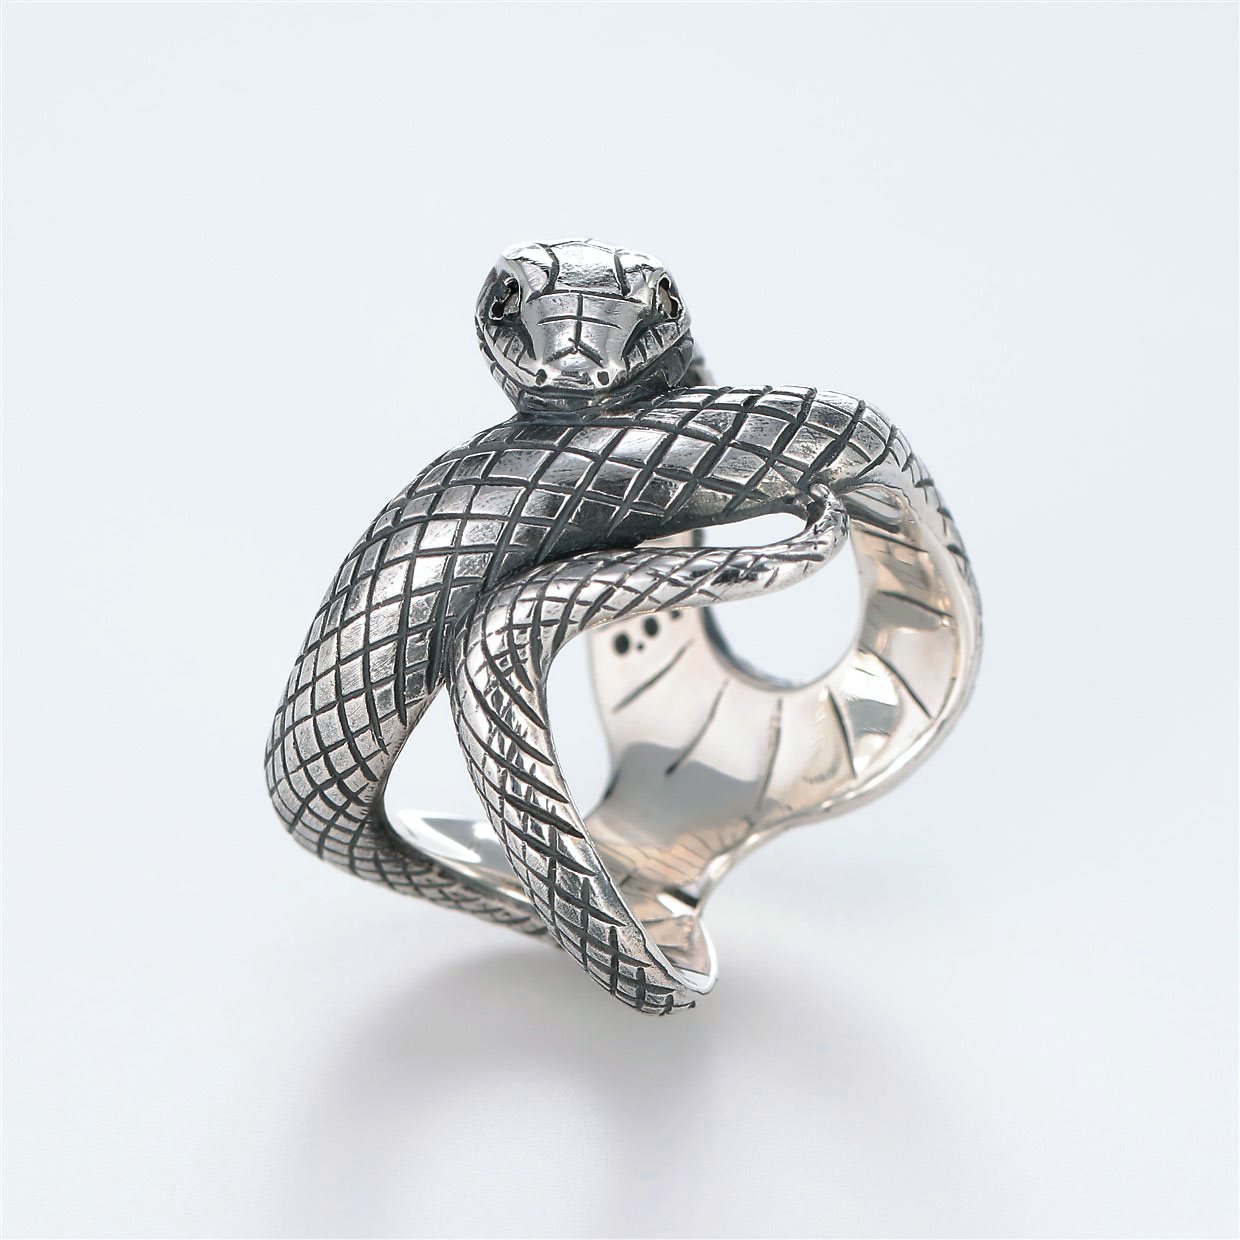 宝石ダイヤモンドを使ったヘビ・爬虫類のデザインが特徴的な銀風指輪の商品写真です。型番：GP101008-01 画像その1